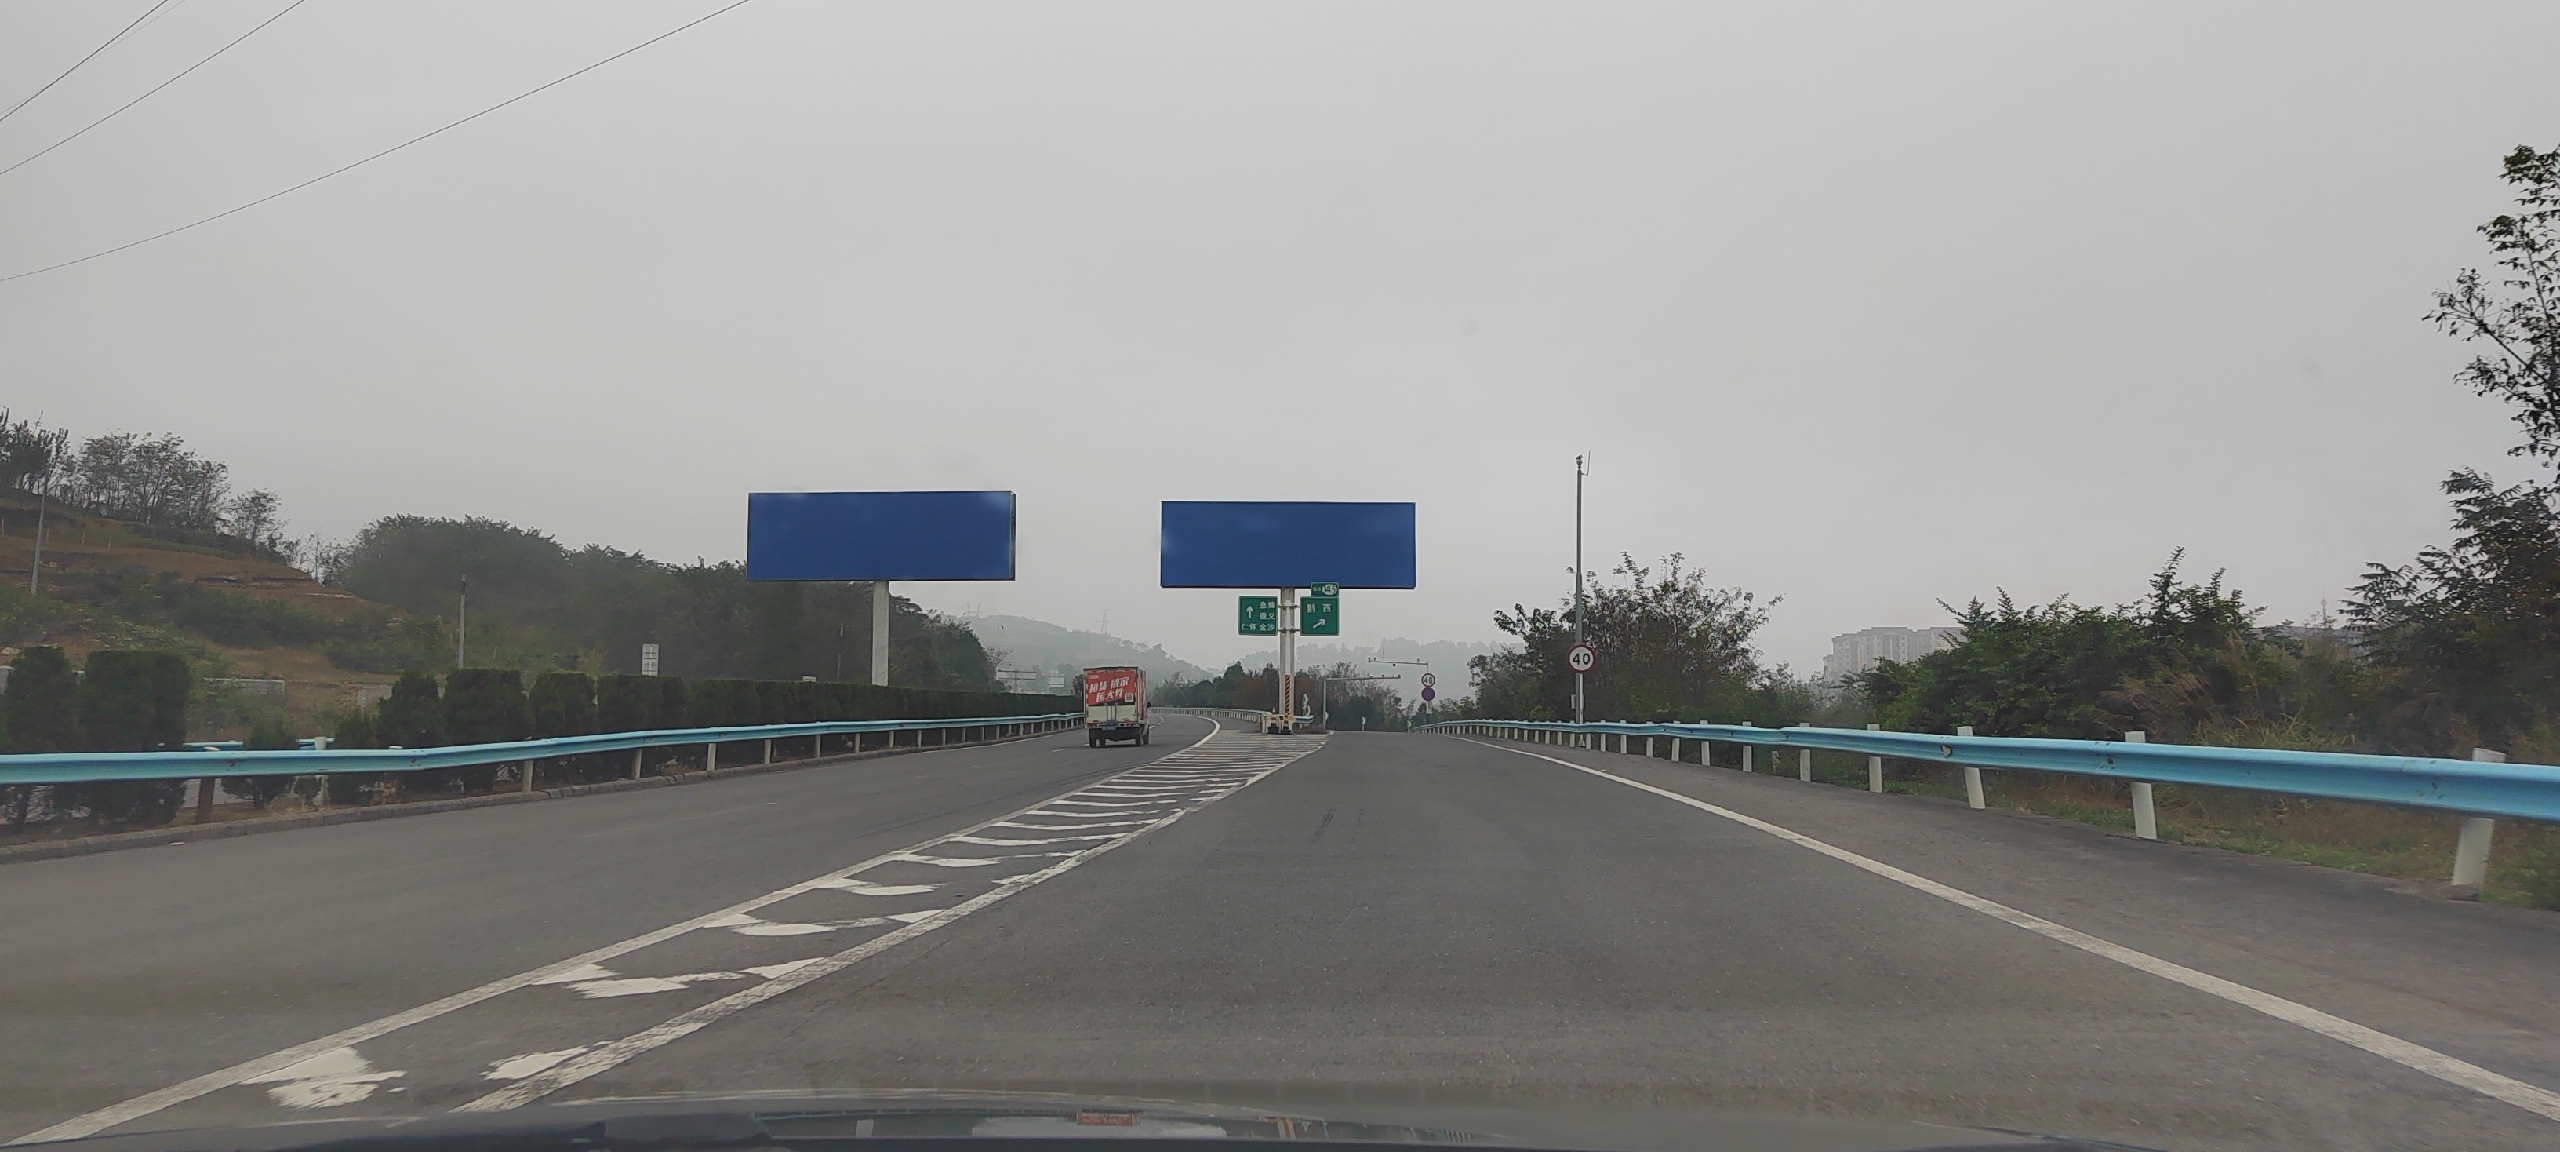 贵州全省多处对牌、服务区45米x4米大天桥招商高速公路媒体多面翻大牌